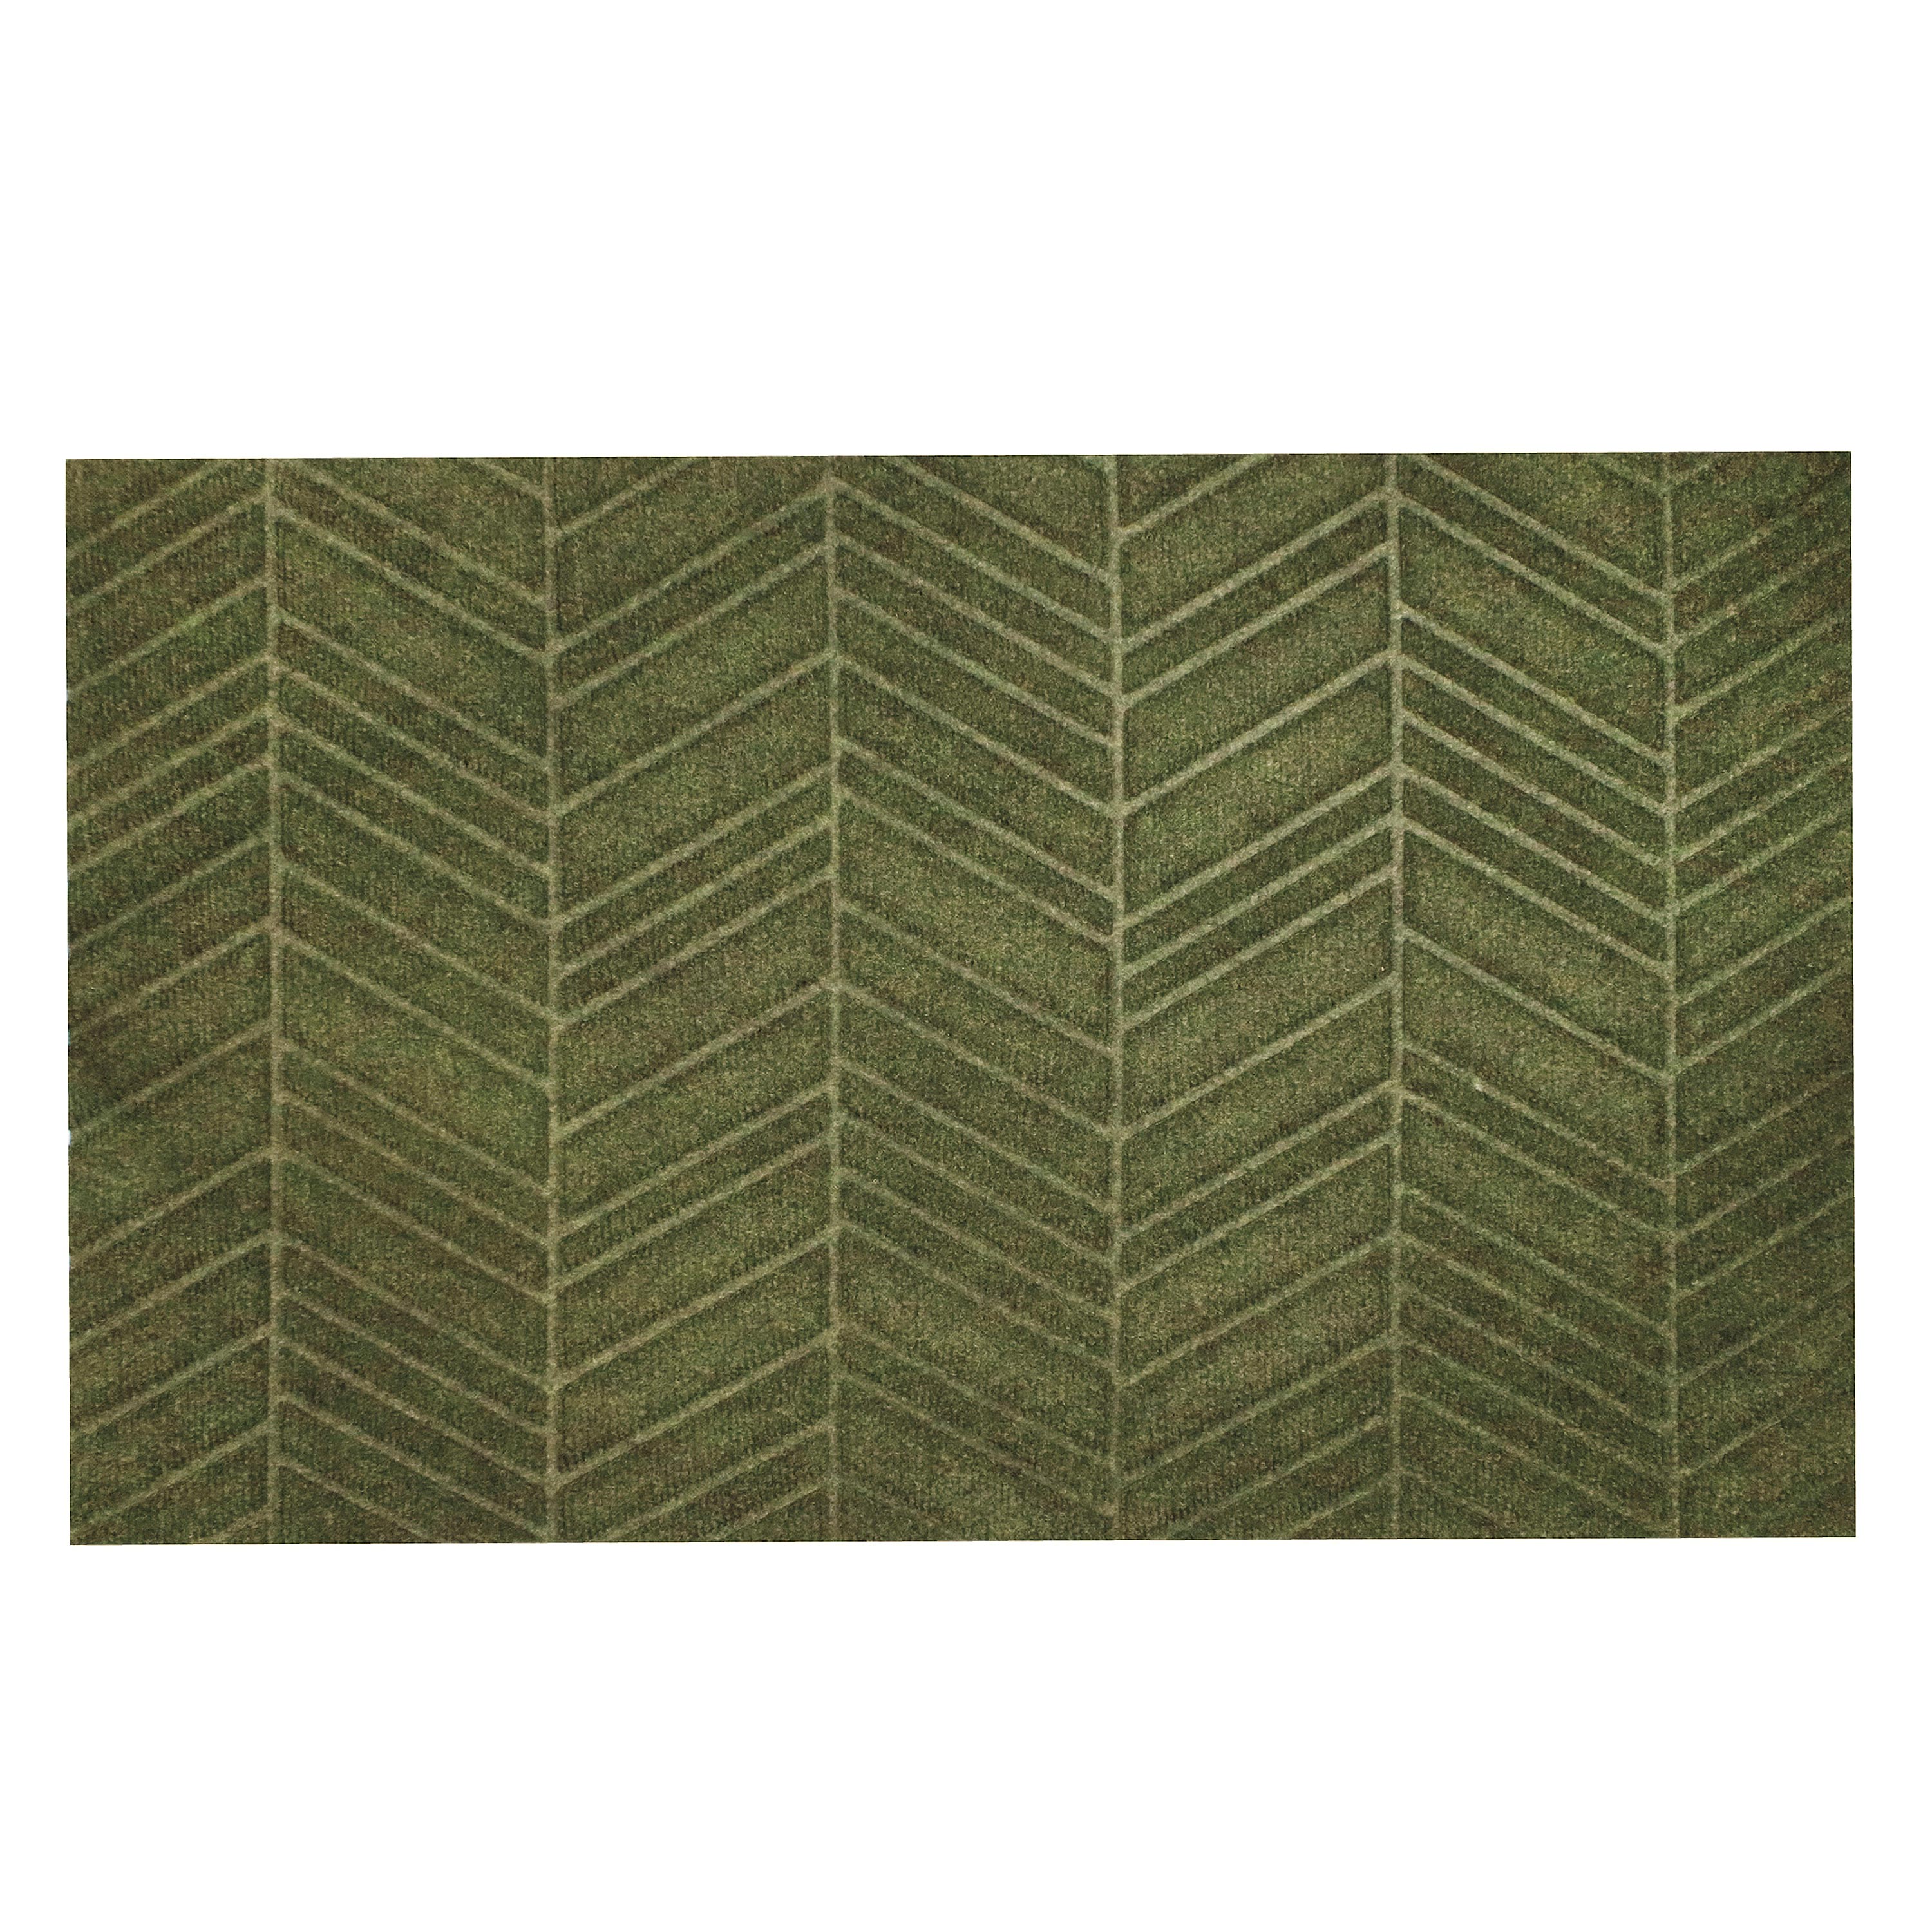 Waterhog Luxe In Vein Doormat, 35"L x 21.5"W swatch image